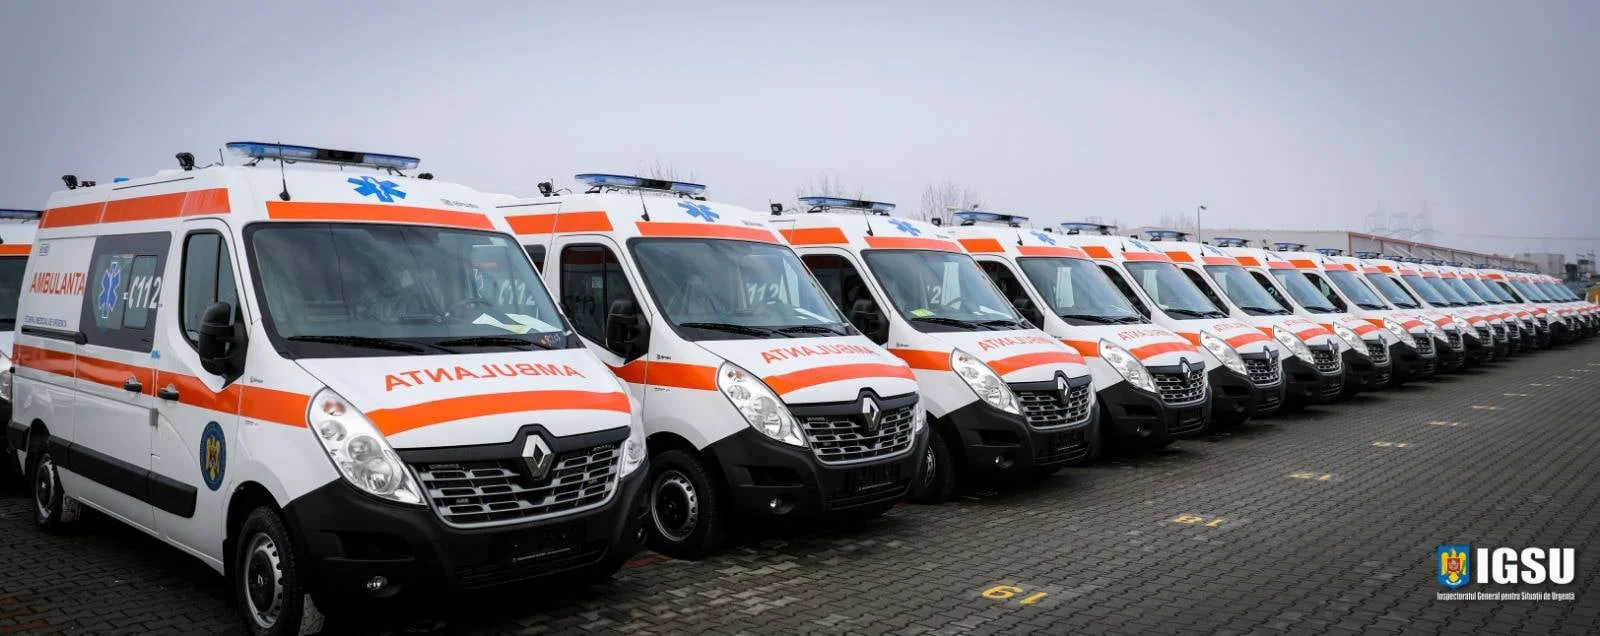 Ministerul Dezvoltării ambulanțe noi fonduri europene